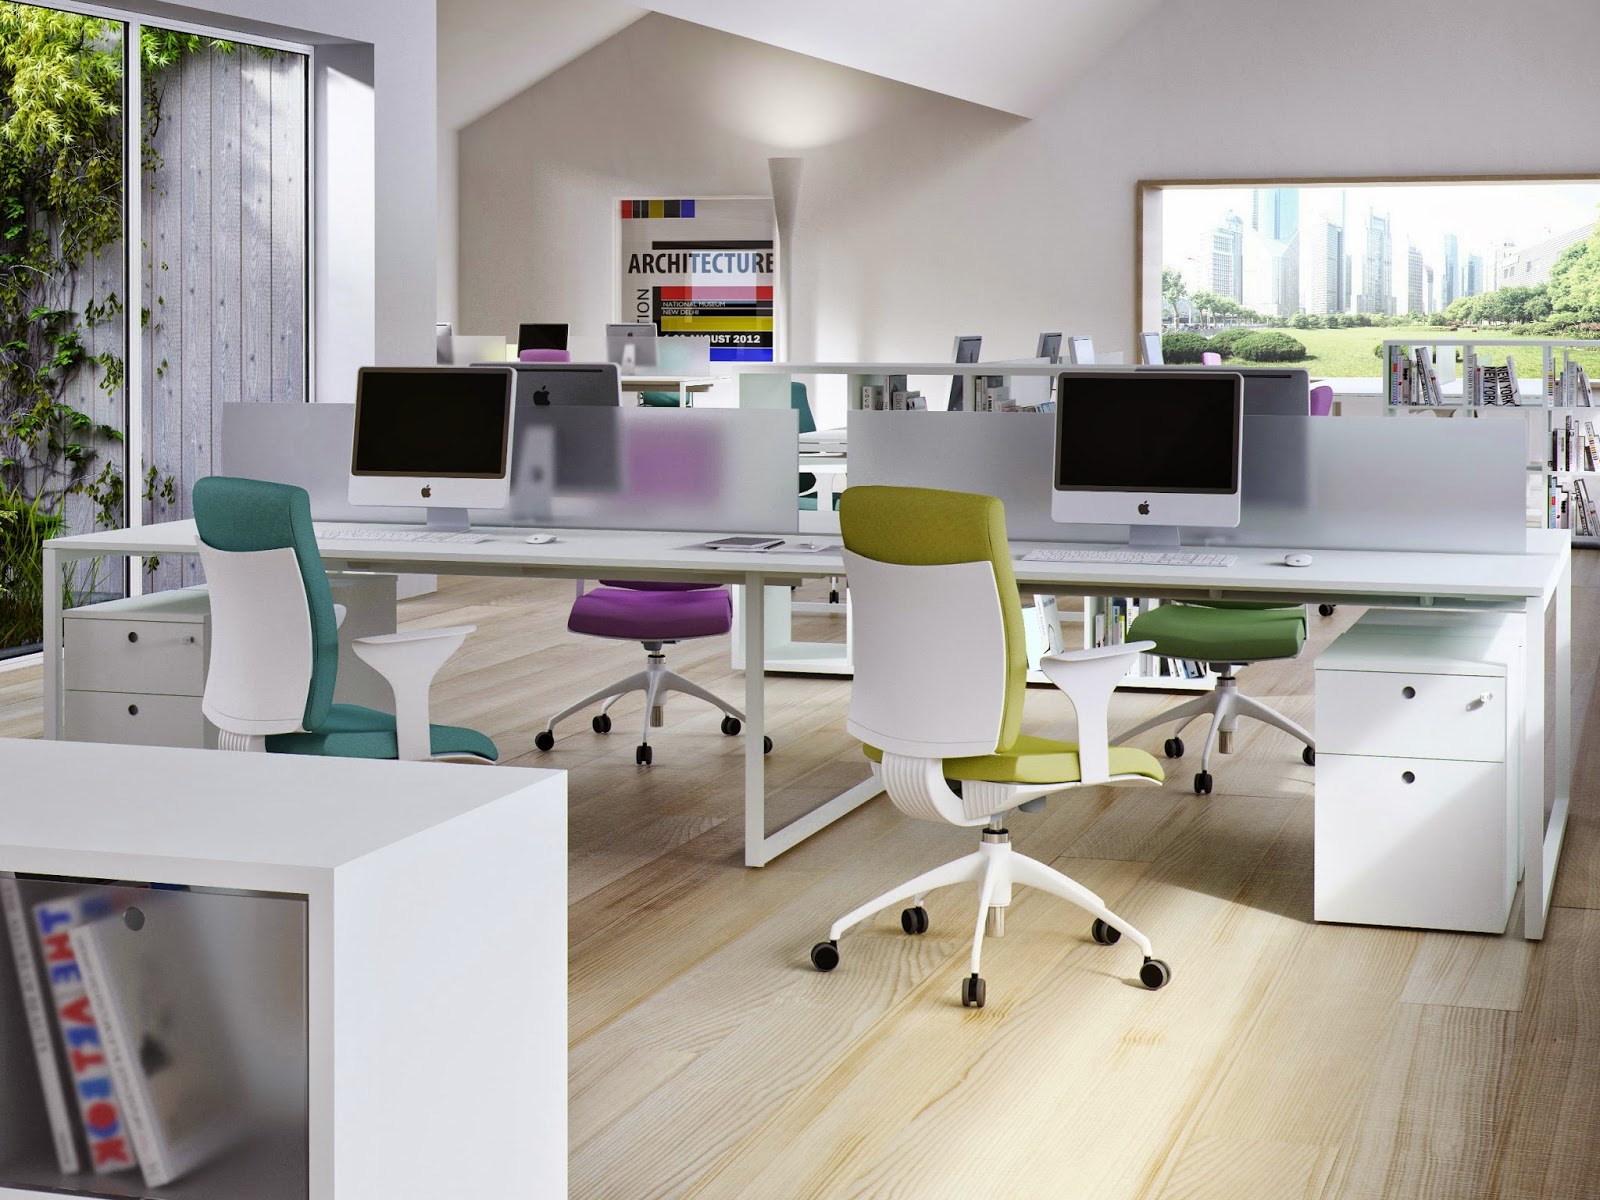 Bàn ghế văn phòng: Sự thoải mái trong từng giờ làm việc là yếu tố quan trọng để tăng năng suất và sự thành công trong công việc. Hãy trang trí bàn ghế văn phòng của bạn với những thiết kế hiện đại, tiện nghi và thoải mái nhất tại đây, để bạn có được không gian làm việc hoàn hảo và giúp bạn duy trì tinh thần sáng suốt trong công việc.